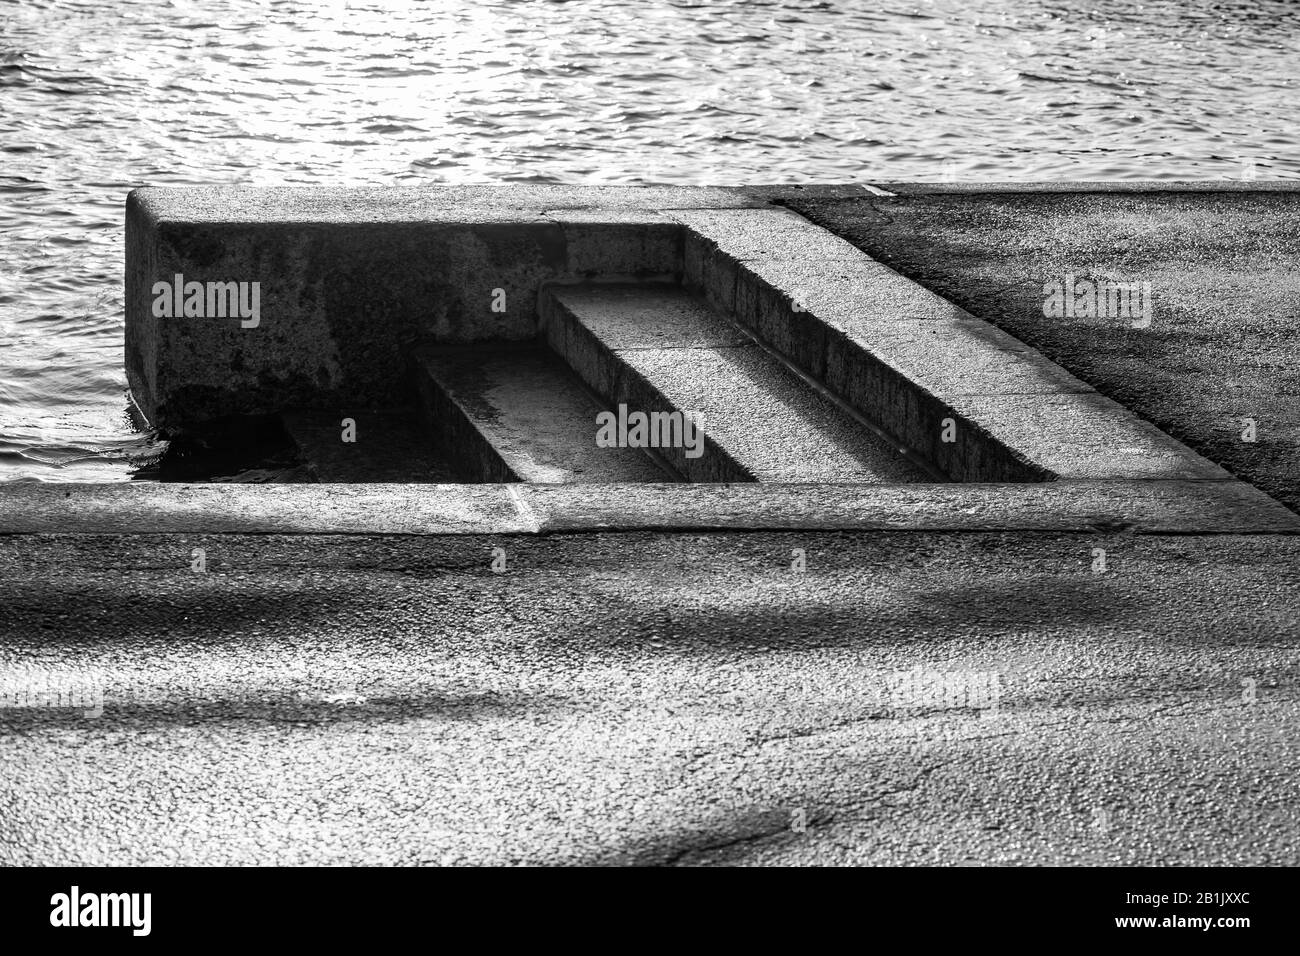 Dunkle, nasse Treppen aus Granit gehen hinunter zum Flusswasser. Schwarz-weiß abstrakter Fotohintergrund für Architekturfotos. St. Petersburg, Russland Stockfoto